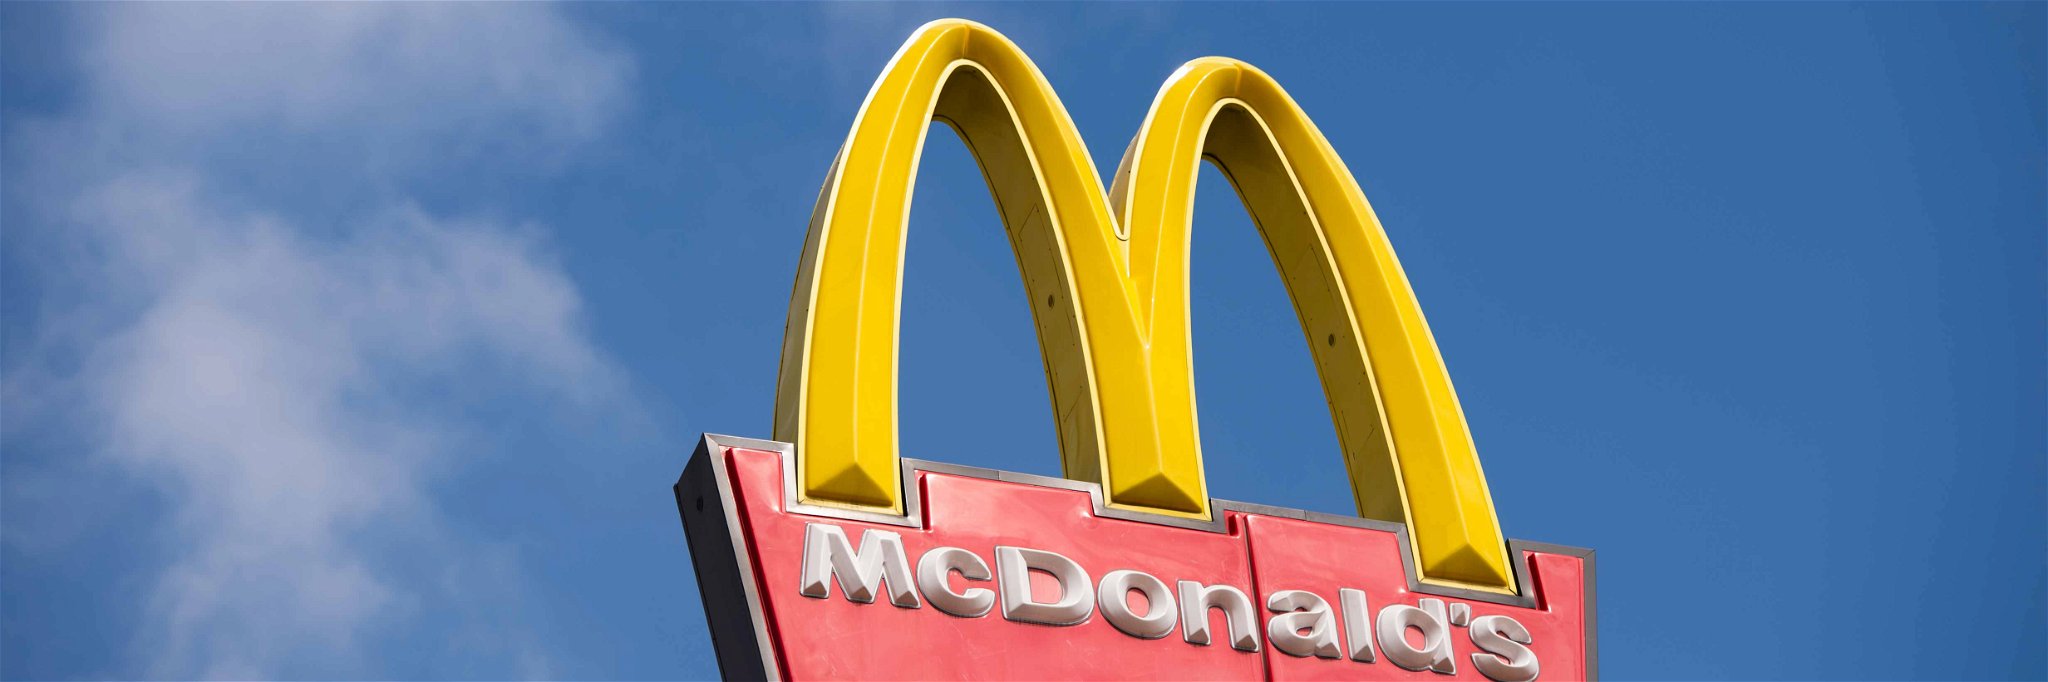 Eine Ära endet: Seit 30 Jahren verköstigt&nbsp;McDonald's die Russen mit Fast Food, damit ist bis auf Weiteres Schluss.